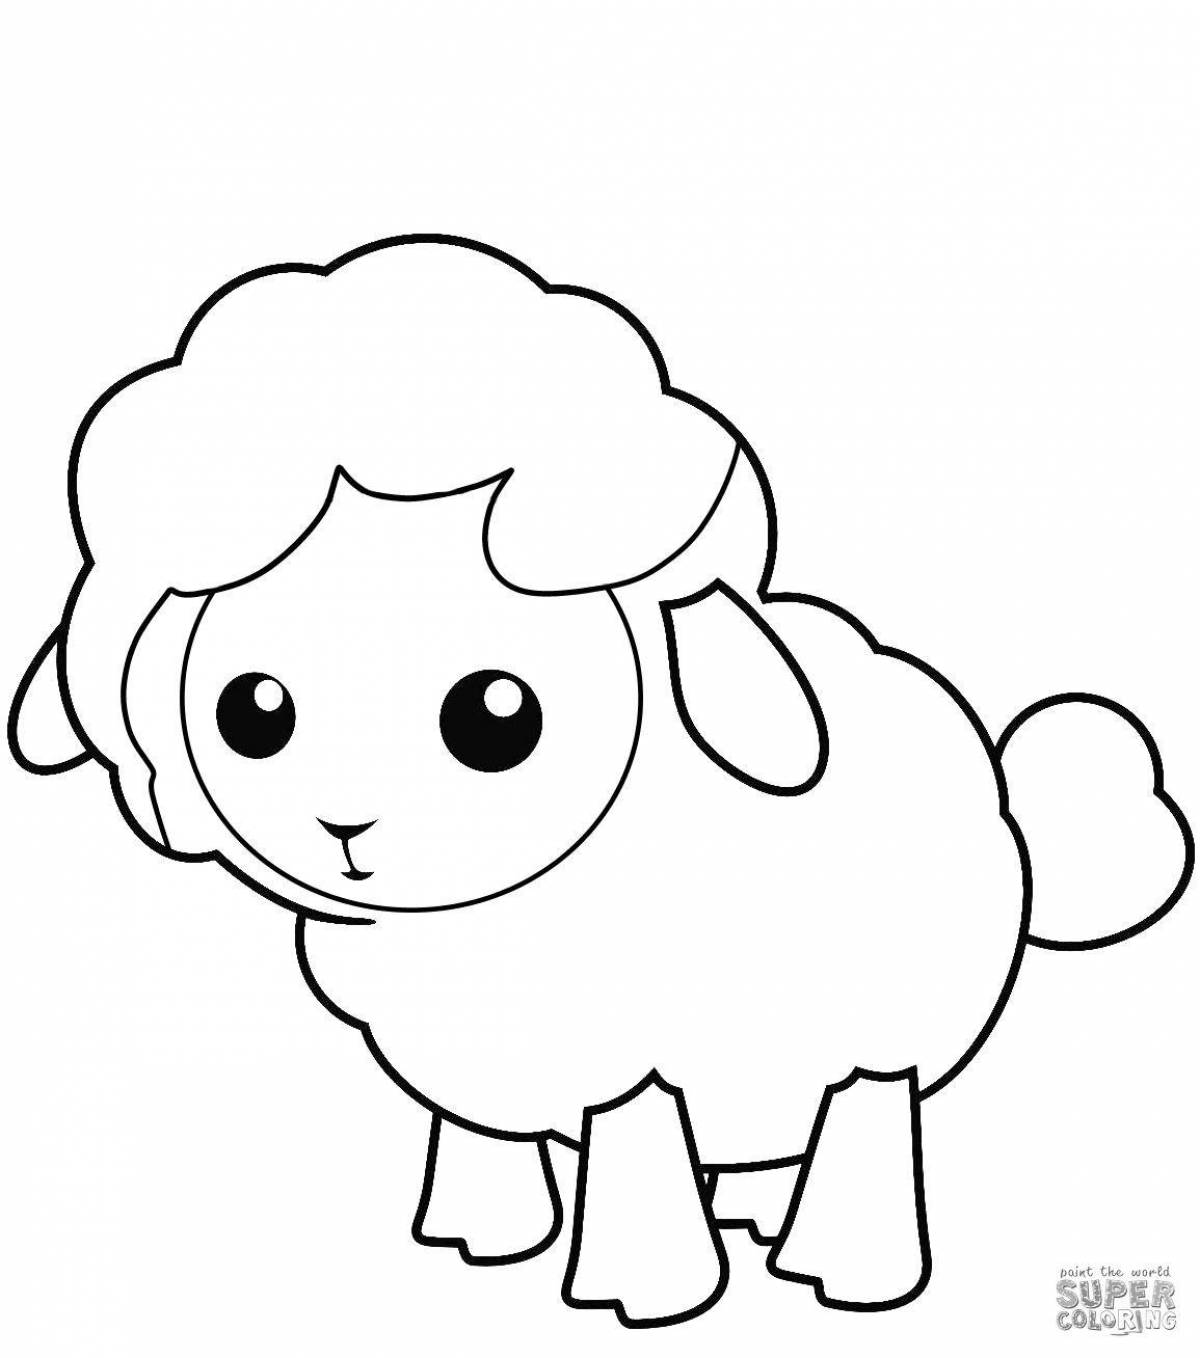 Sweet lamb coloring for kids